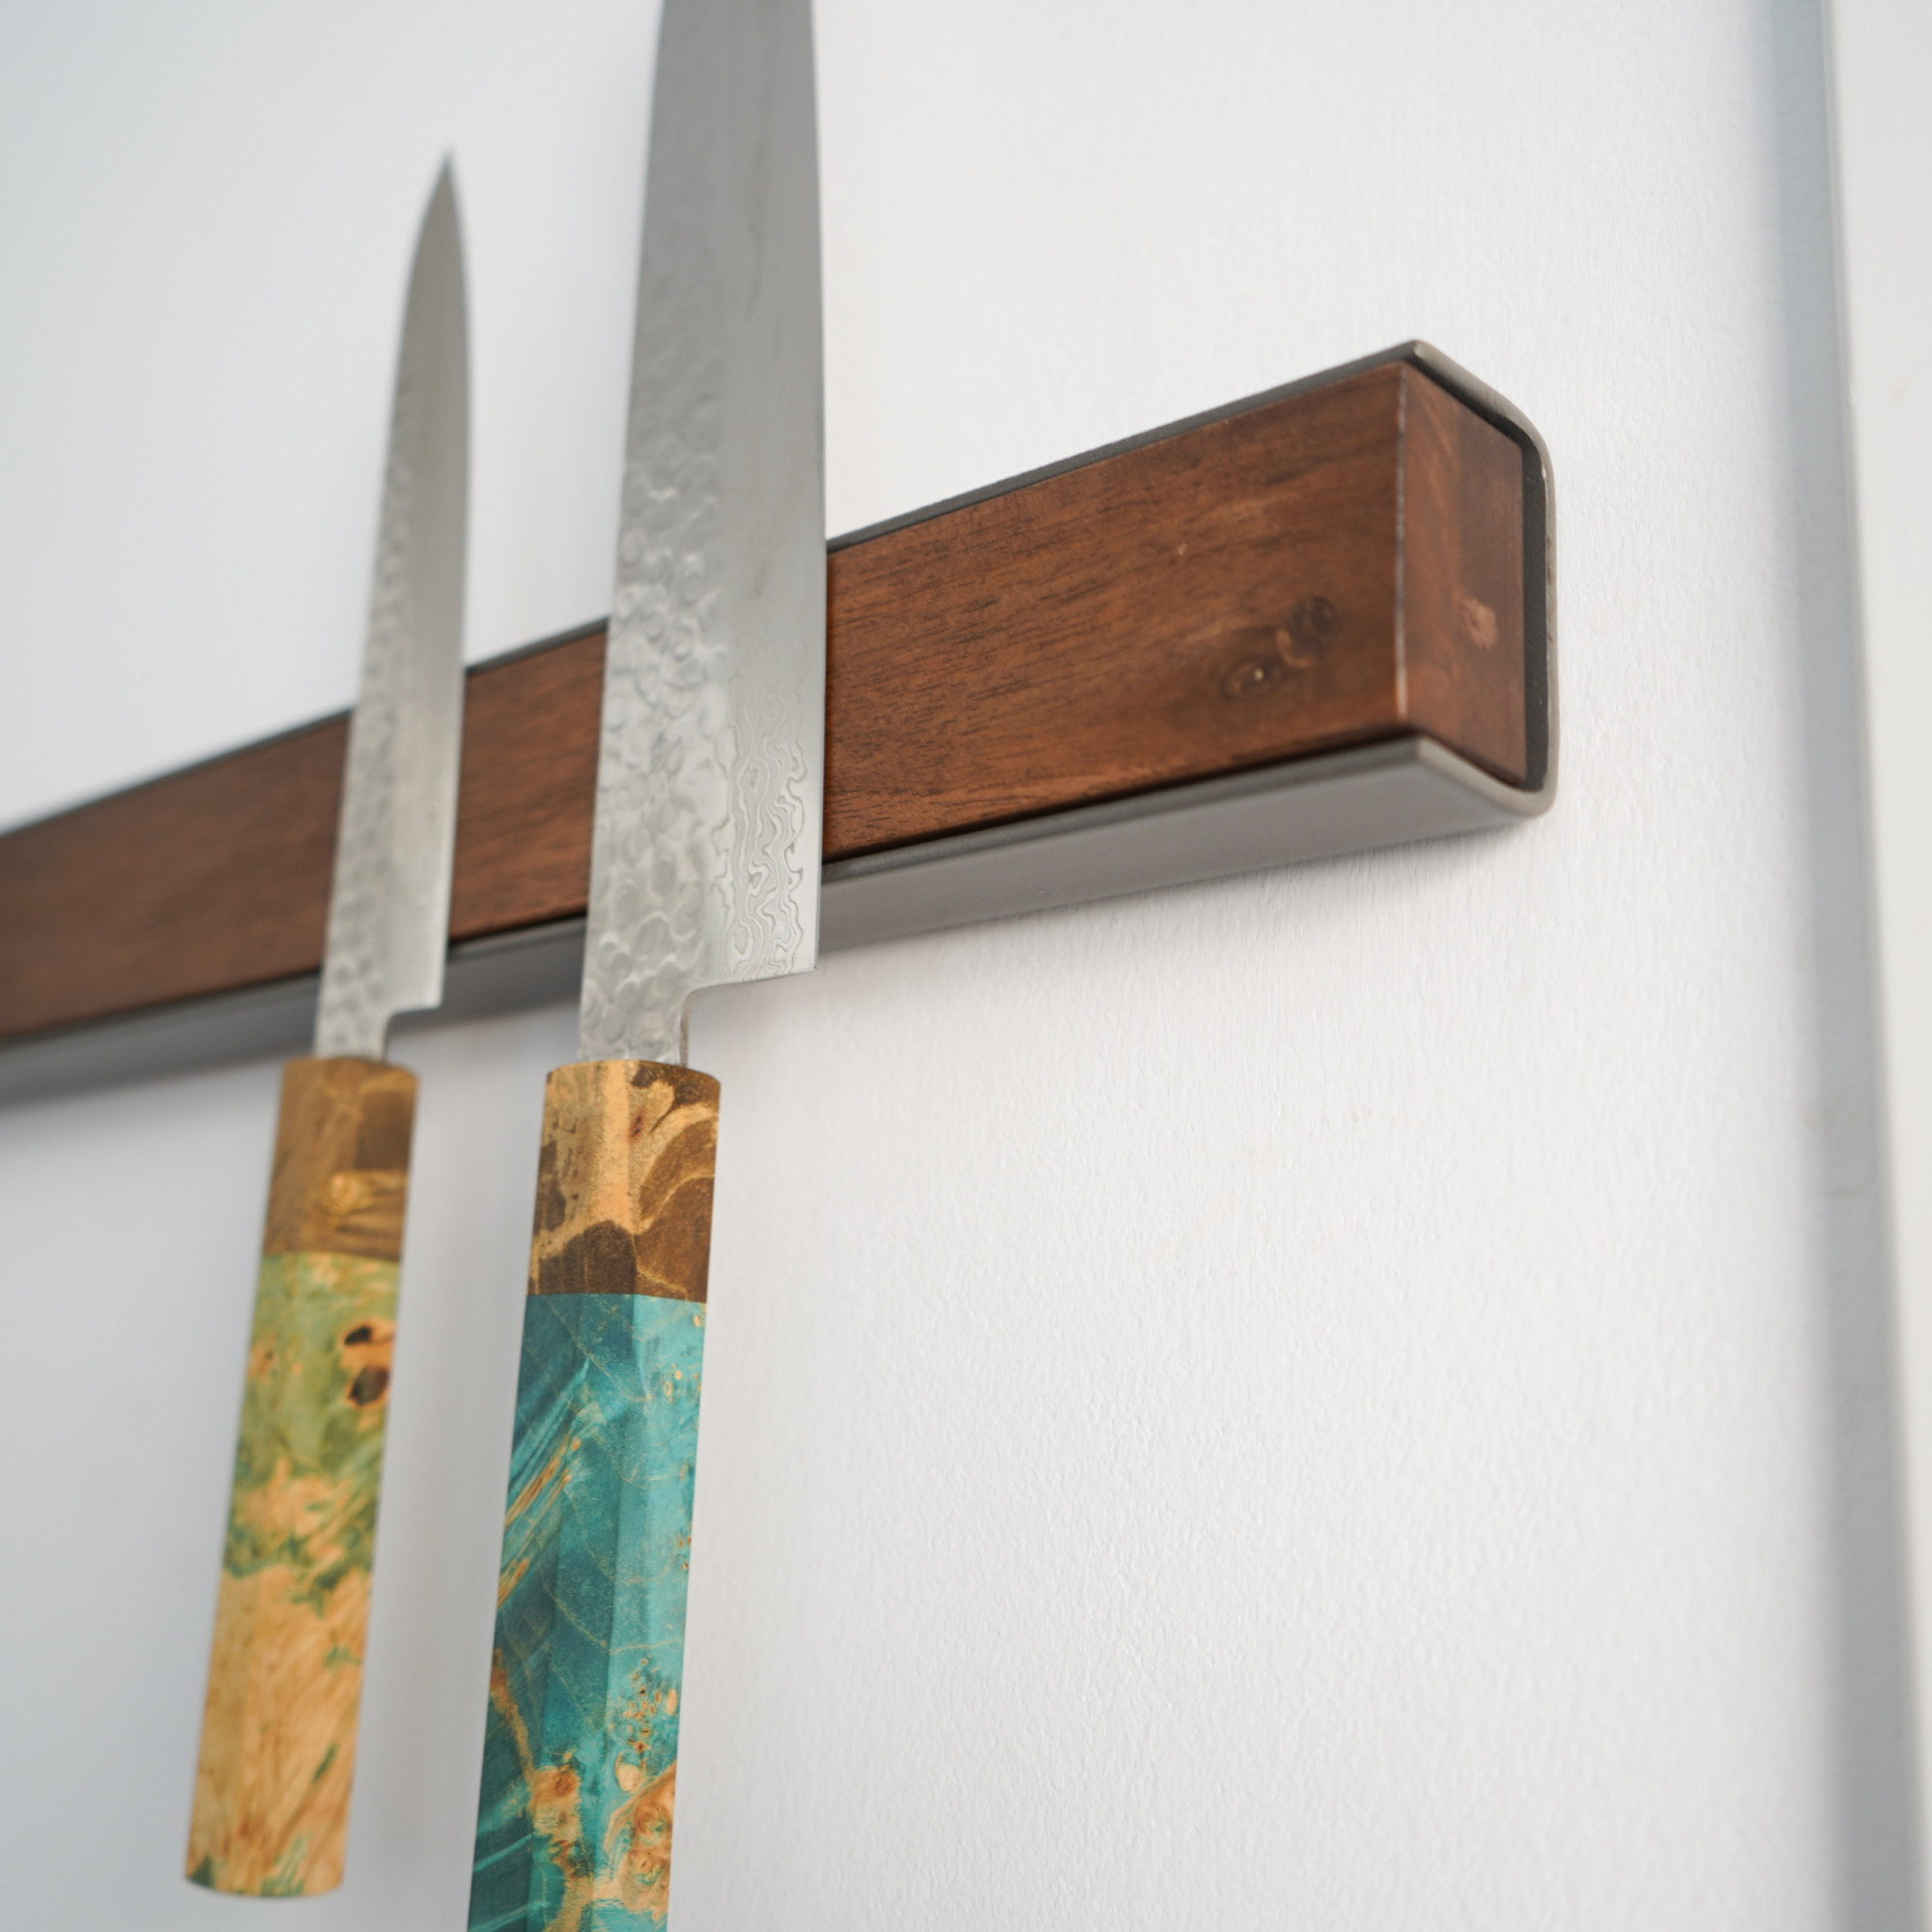 Magnetischer Holz-Messerständer für die Wandmontage - Walnussstahl-Messer